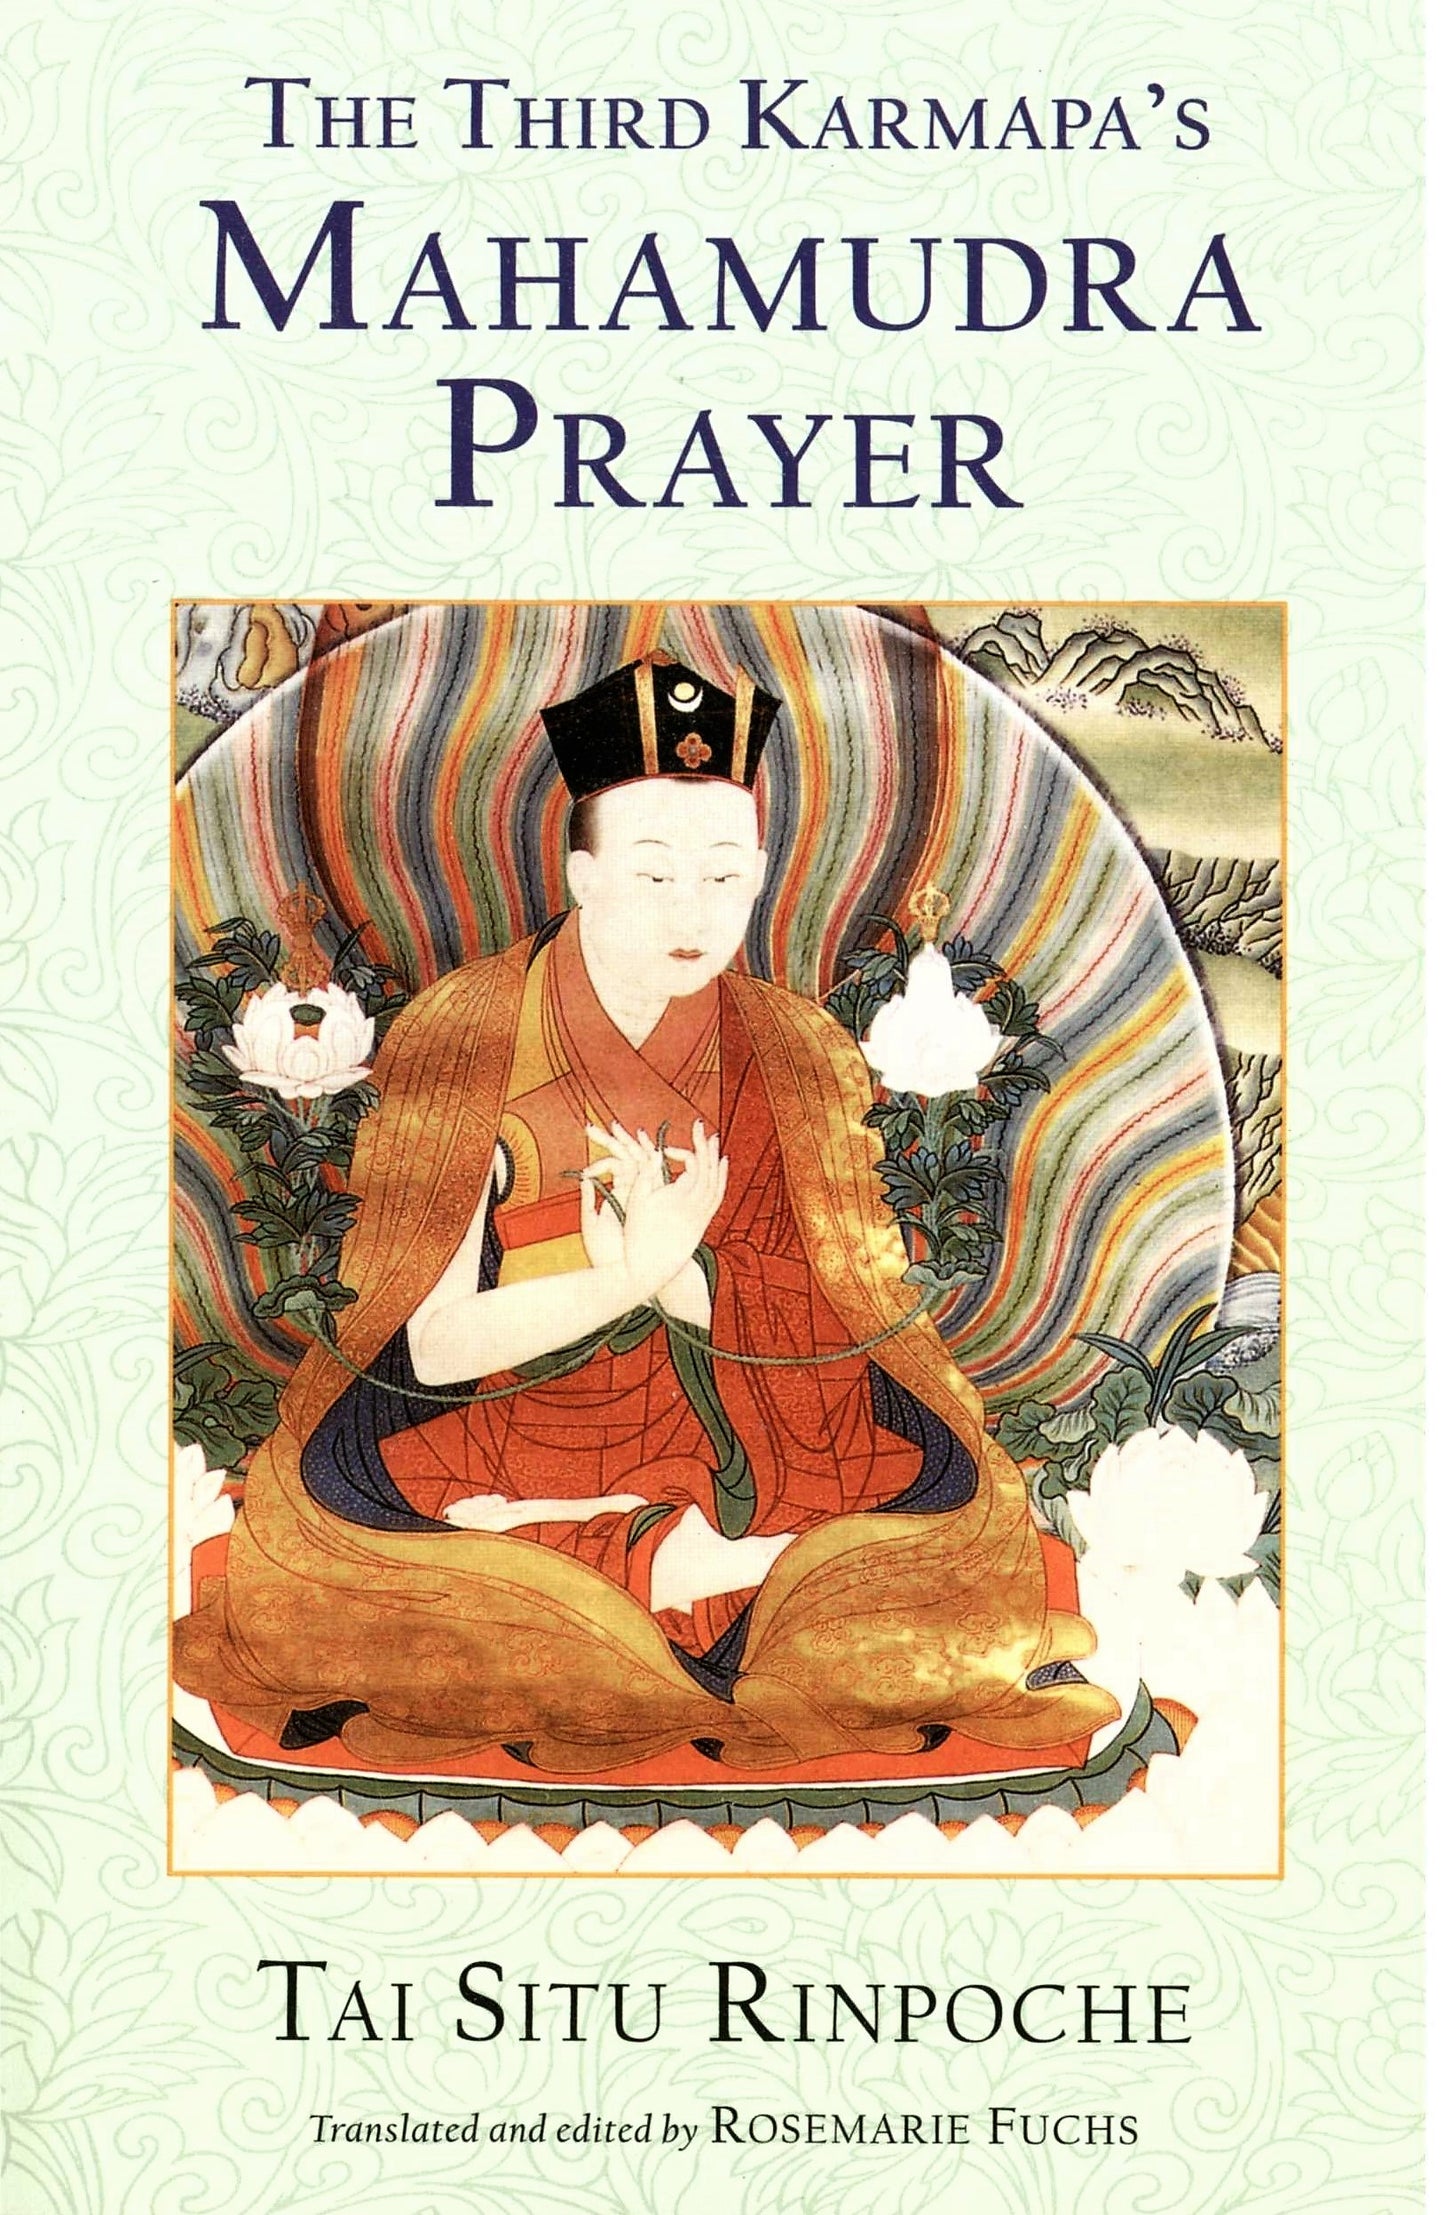 La Oración del Mahamudra del Tercer Karmapa